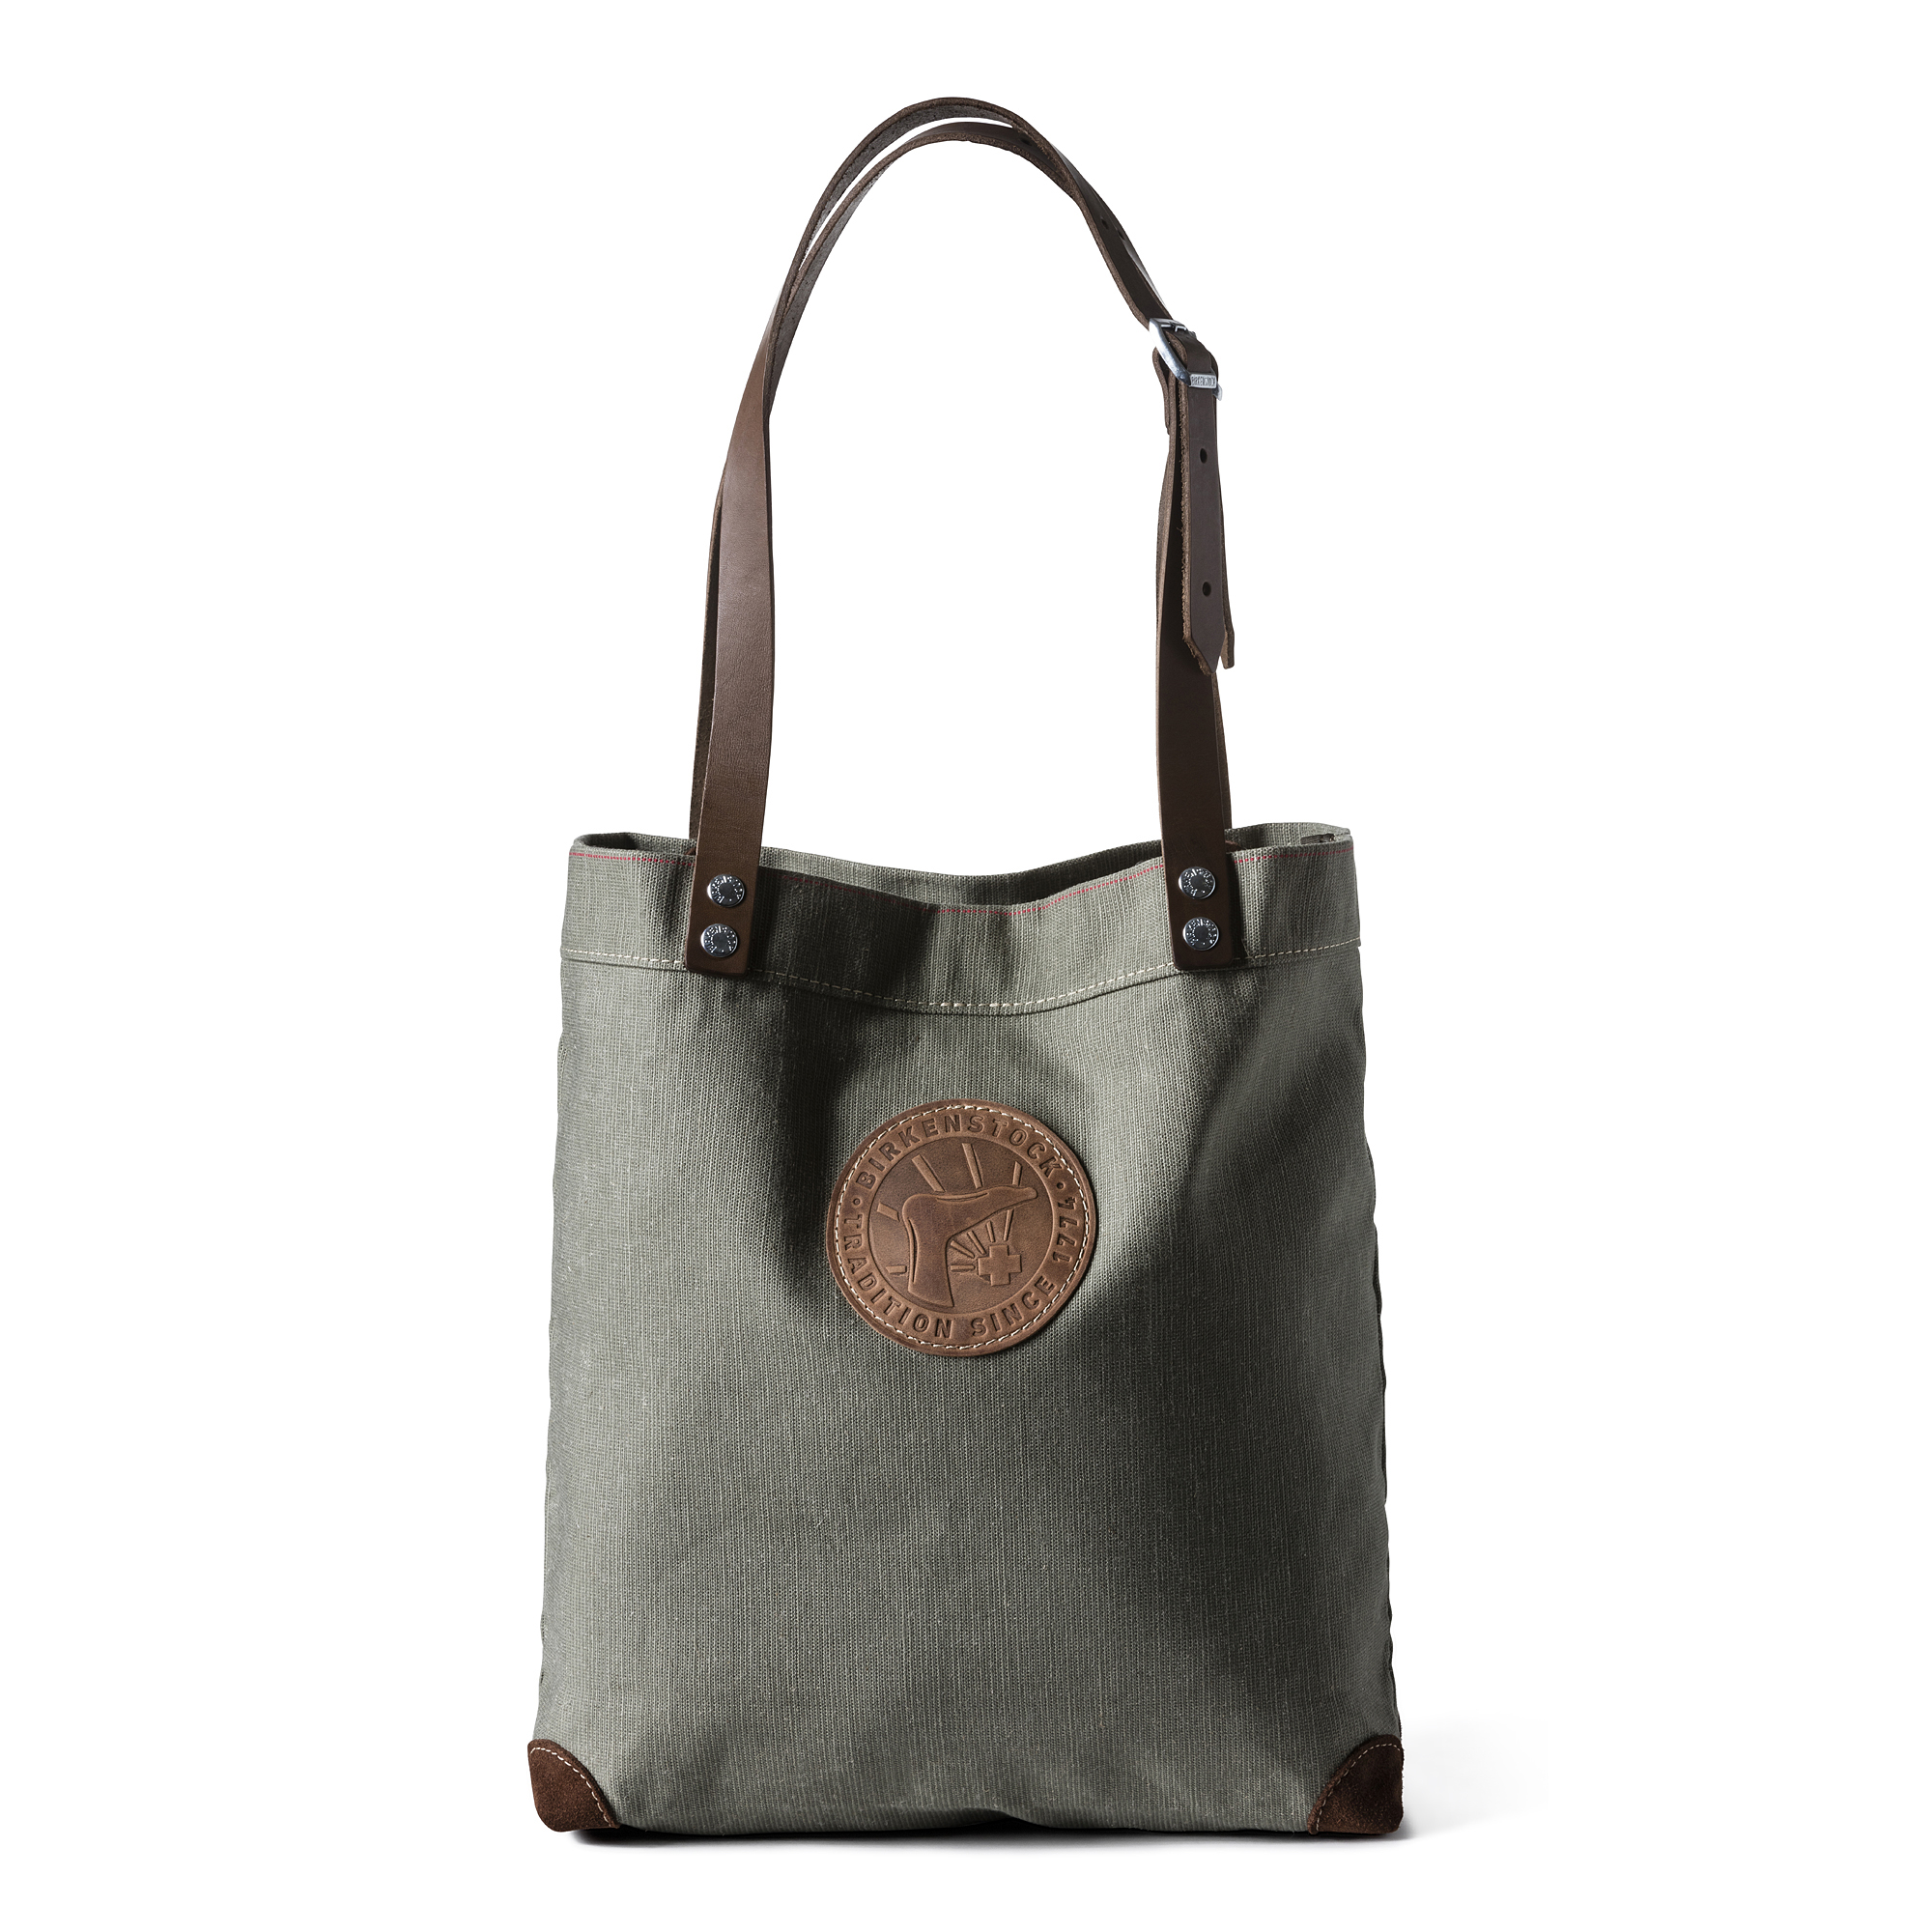 Bag Cologne Medium Olive | shop online 